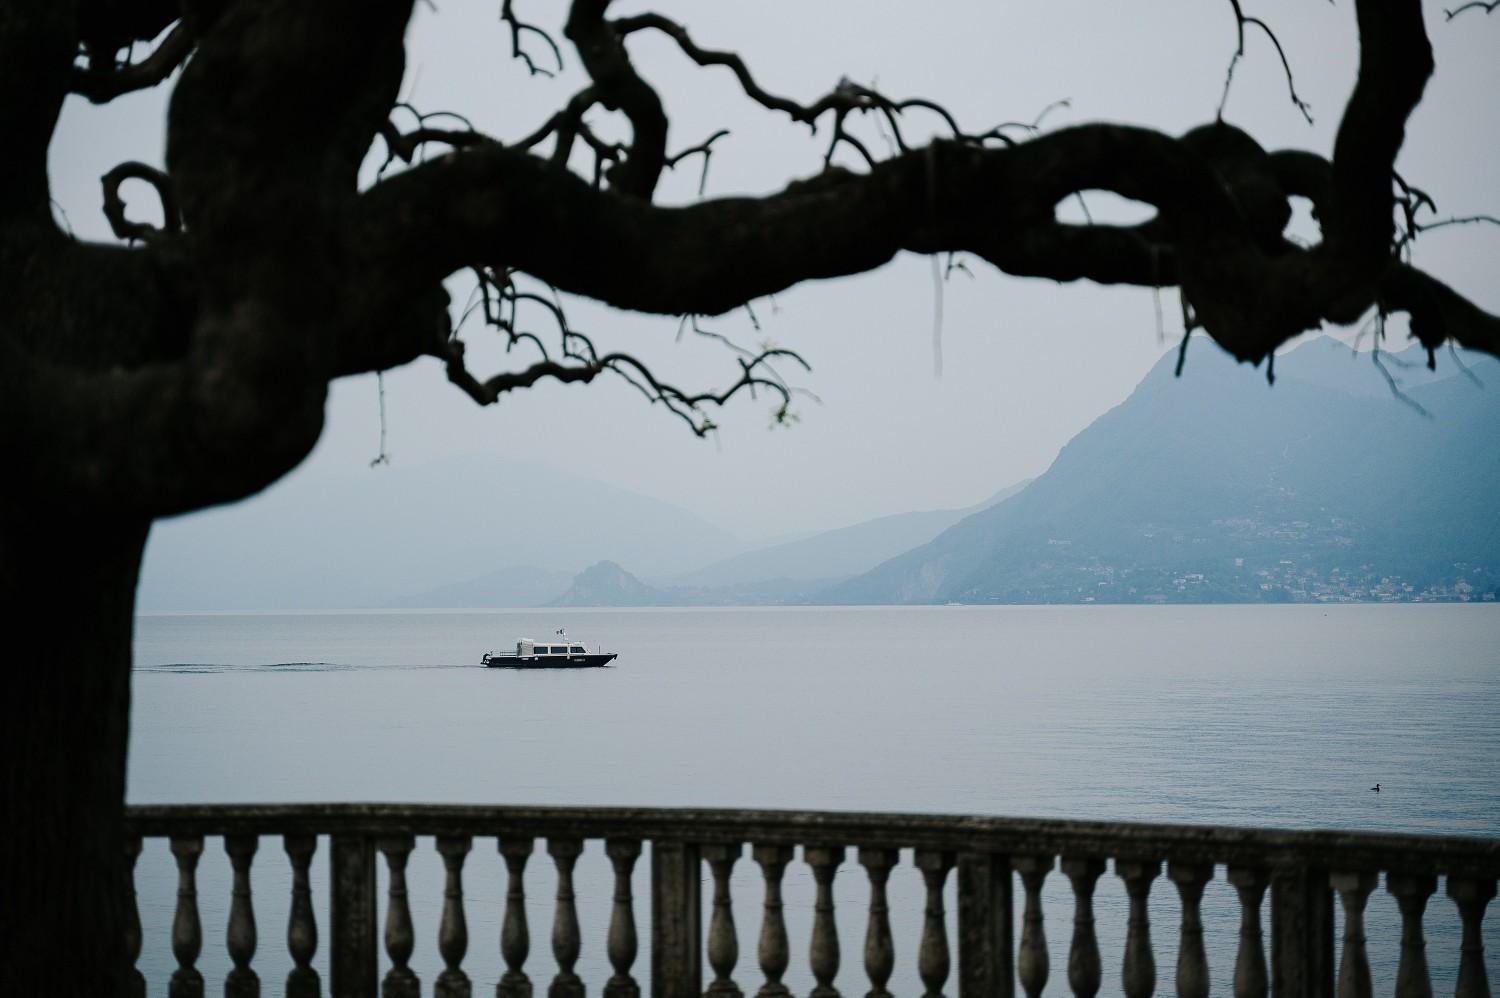 Boat trip on Lake Maggiore